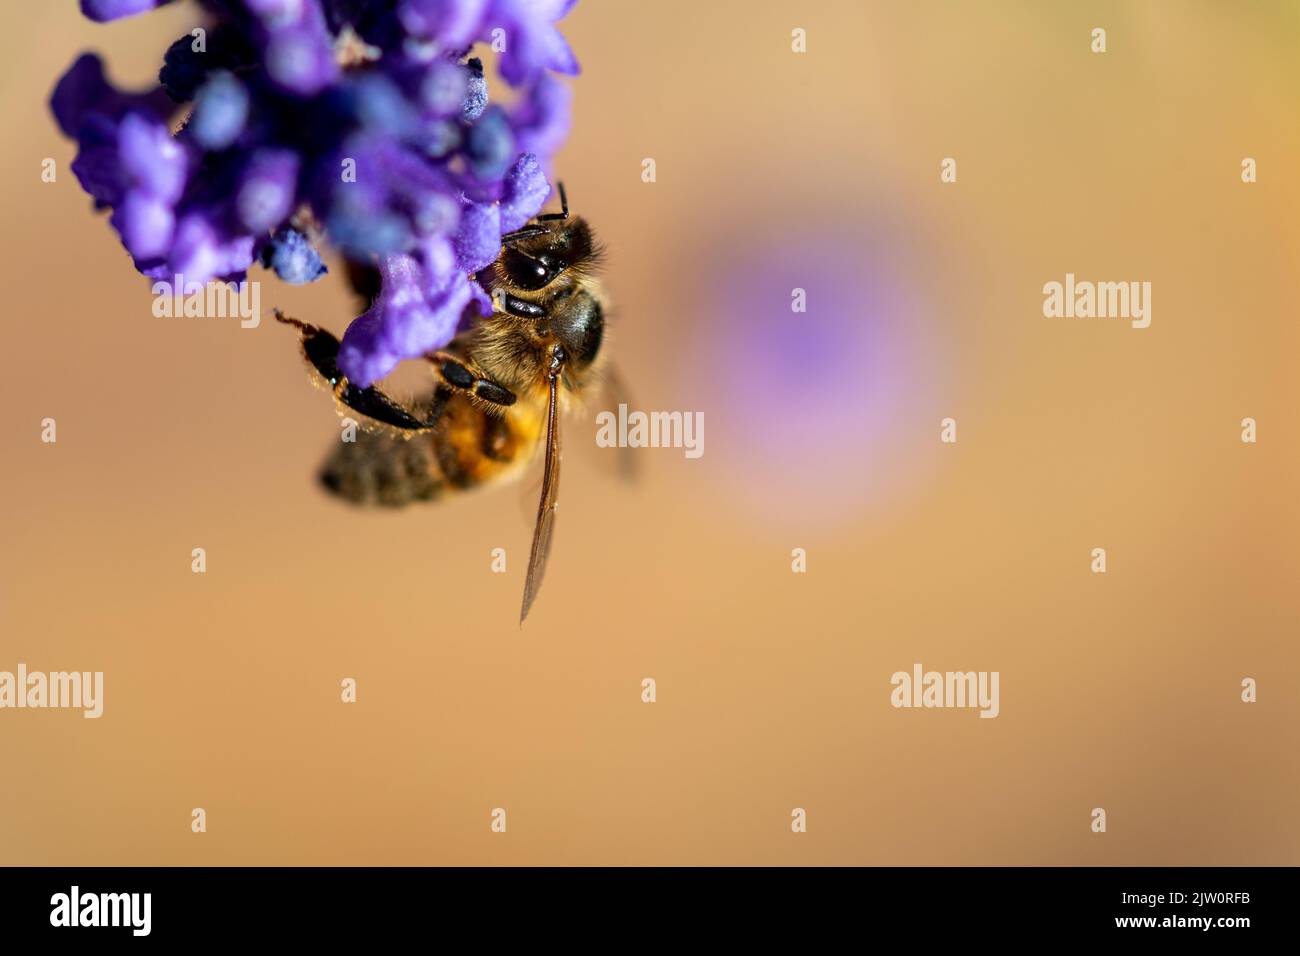 Biene, die auf einer Lavendel-/lavendelblüte sitzt und sich mit Pollen ernährt, mit einem weichen Bokeh hinter der Fliege, das gelb mit violett anderer Blüten zeigt Stockfoto